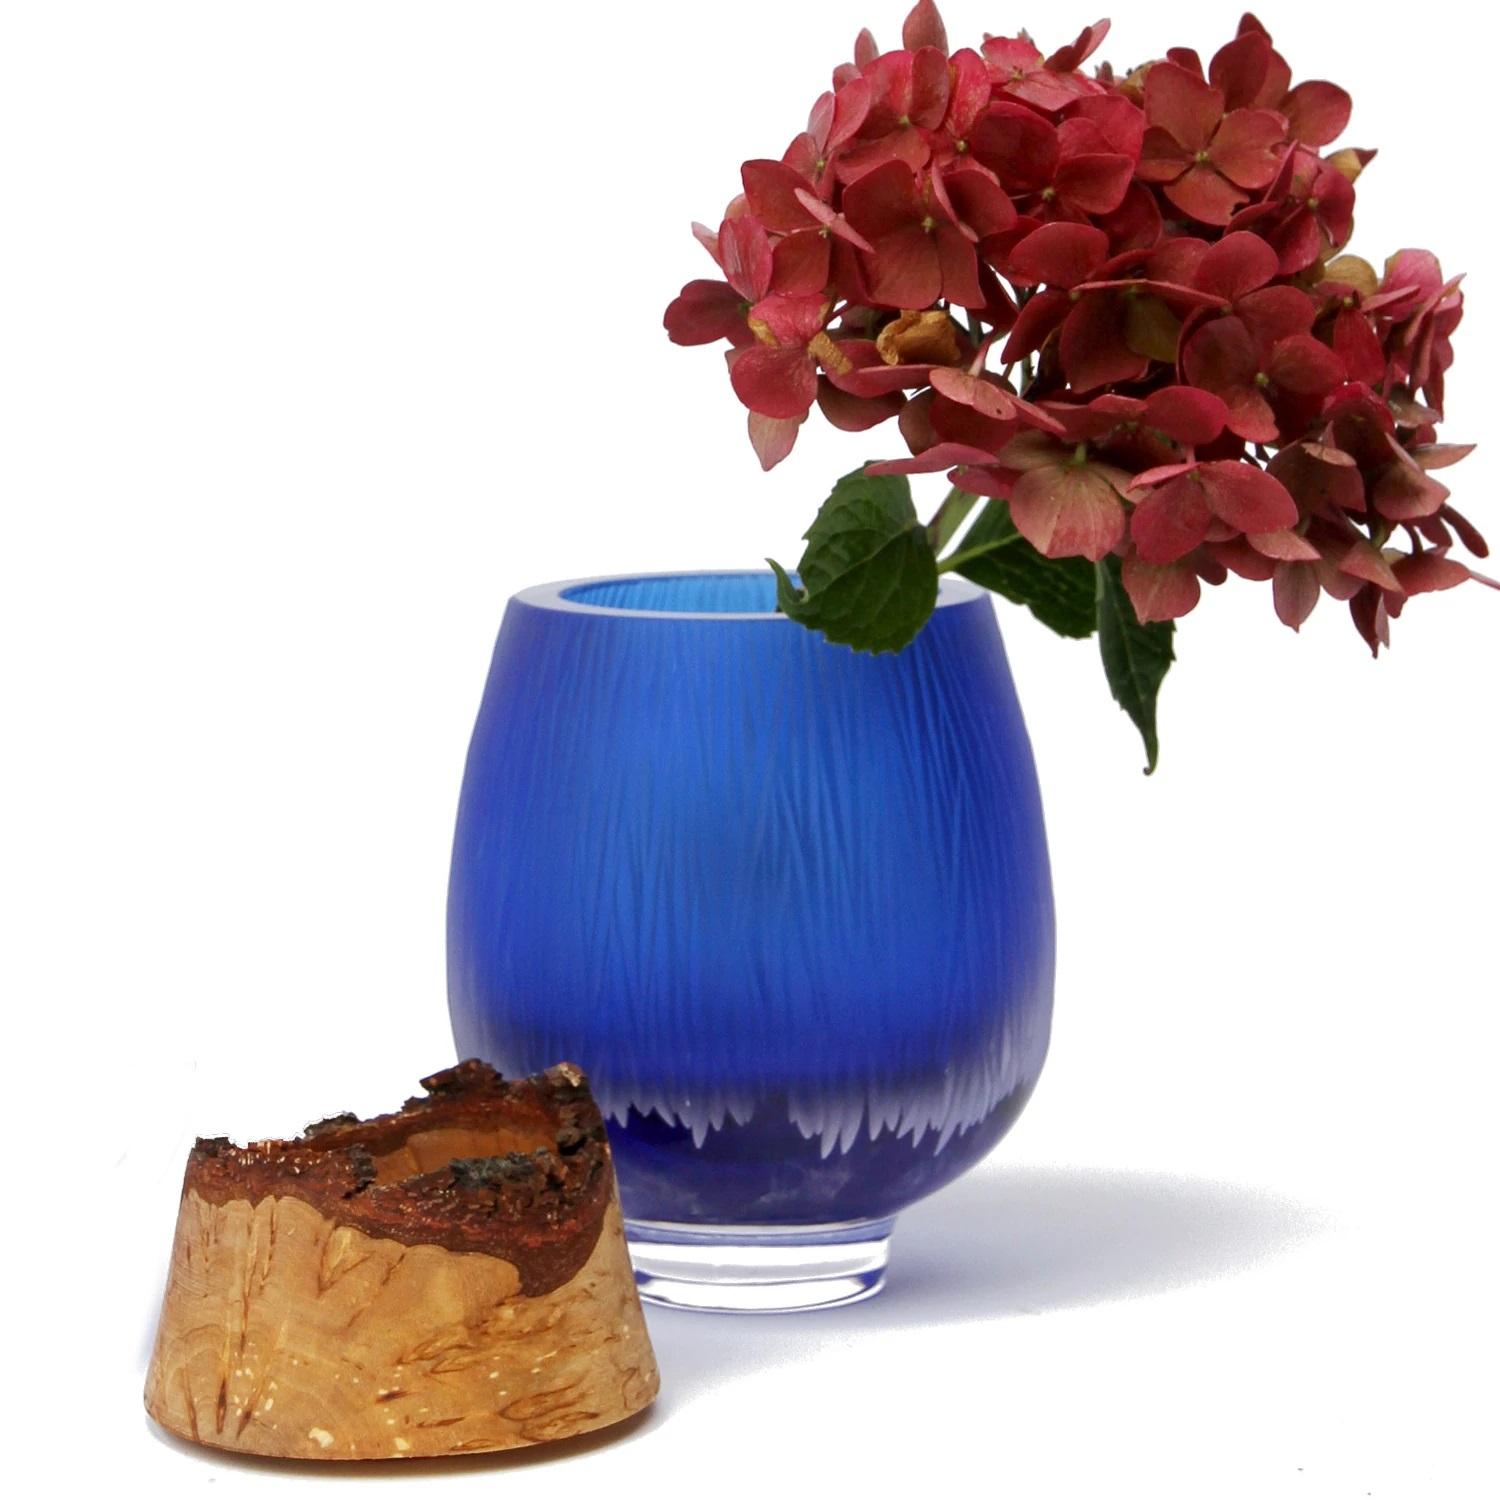 Iris Blue Frida mit Feinschliff Stapelgefäß, Pia Wüstenberg
Abmessungen: T 13 x H 20
MATERIALIEN: geschliffenes Glas, Holz
Erhältlich in anderen Farben.

Mit seinem skulpturalen Glas, das von Curly Birch gekrönt wird, ist Poppy ein exquisites Gefäß.